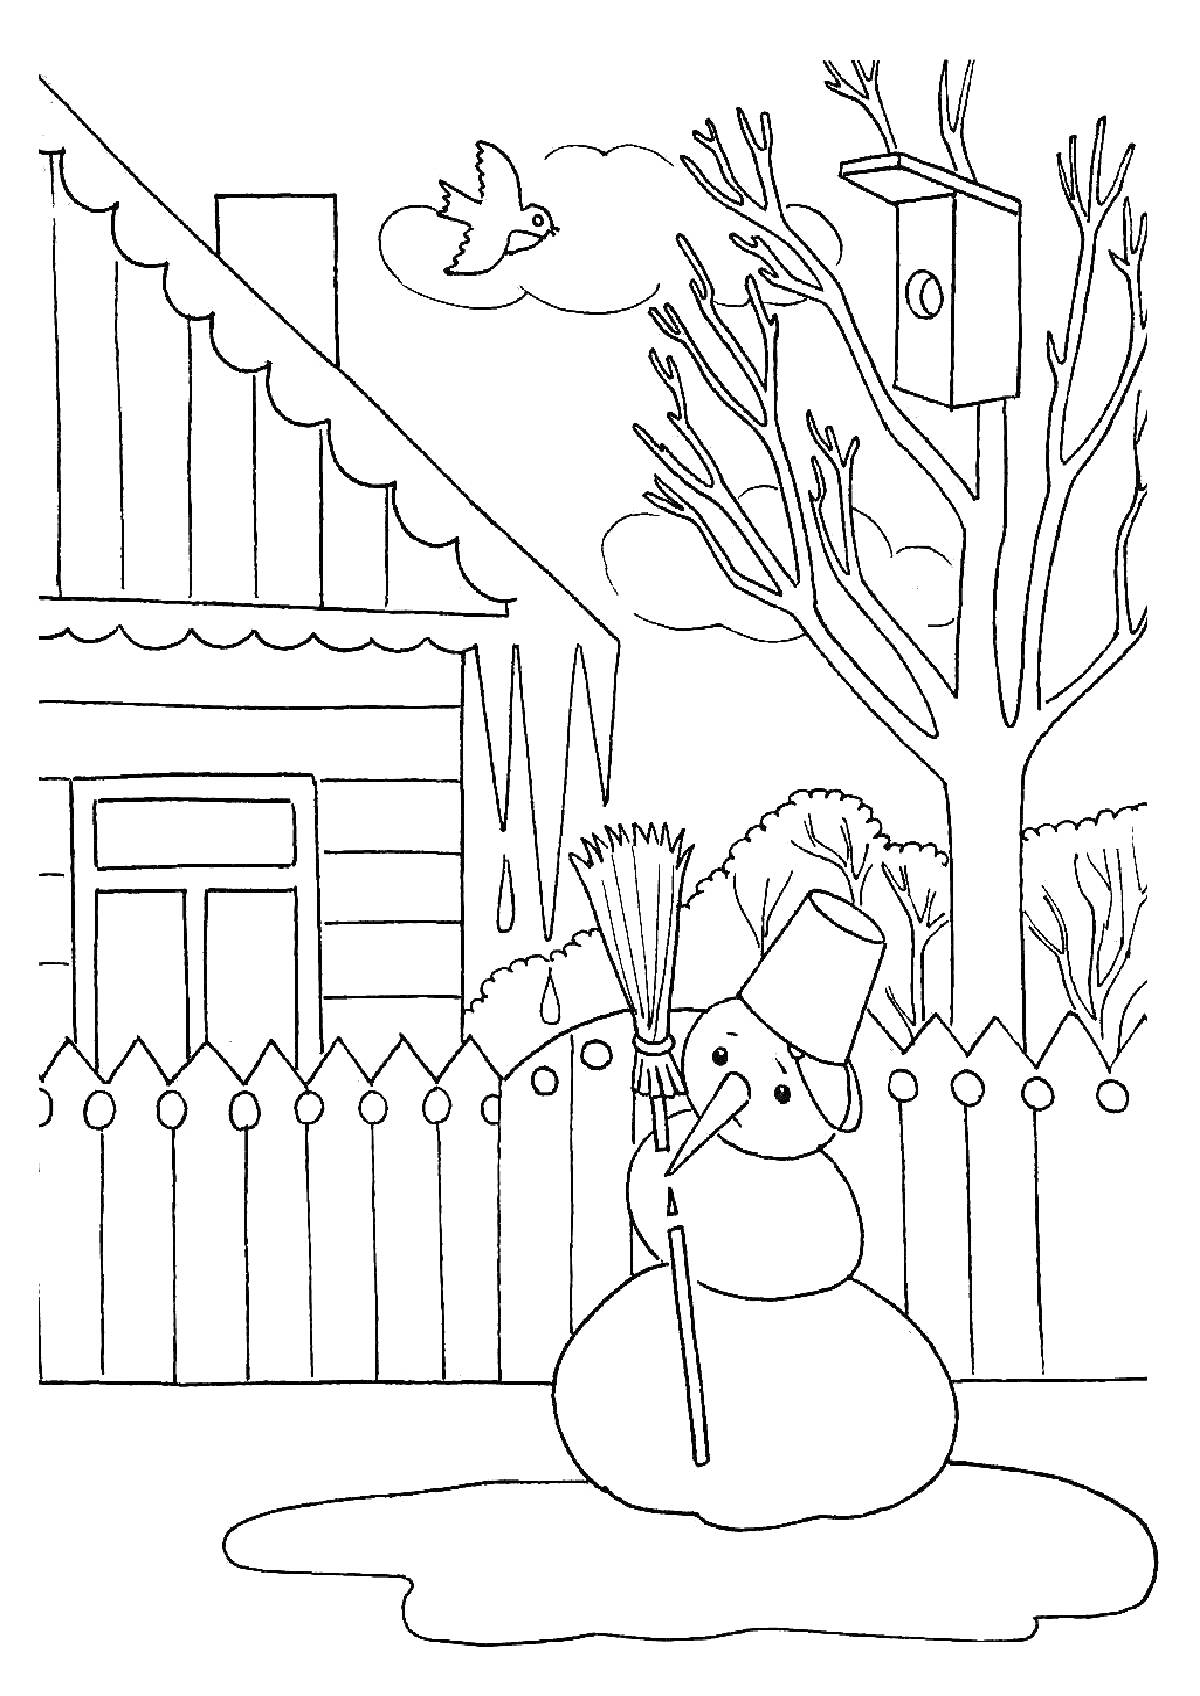 Весенняя сцена во дворе с тающим снеговиком, деревом с птичьим домиком, птицей в полете и домом на заднем плане